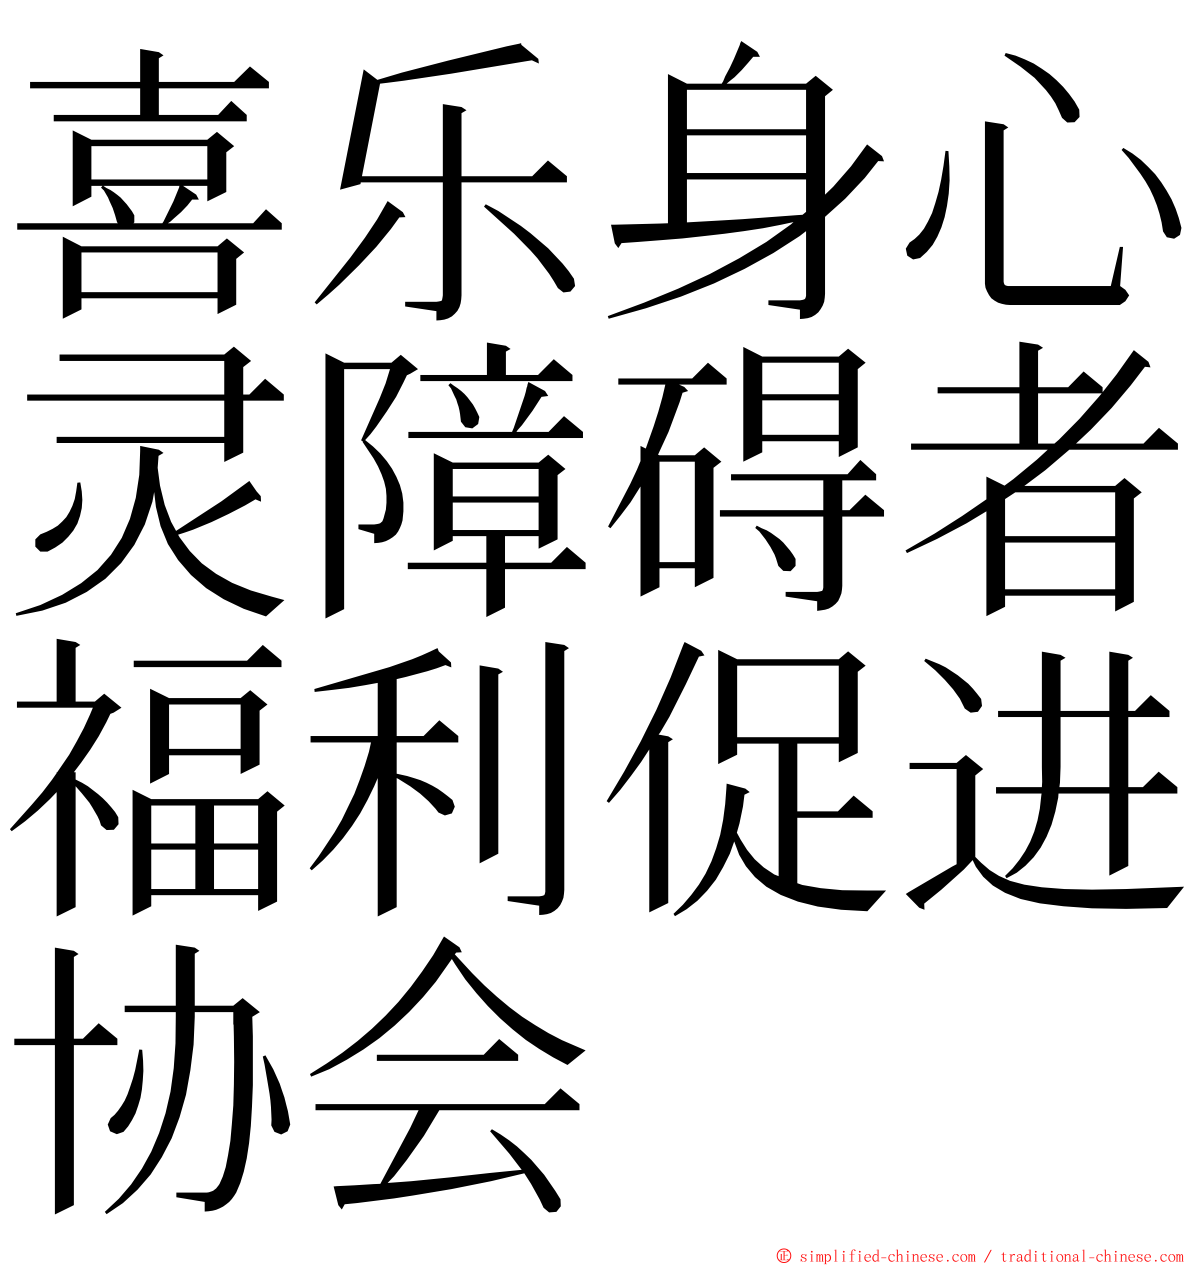 喜乐身心灵障碍者福利促进协会 ming font